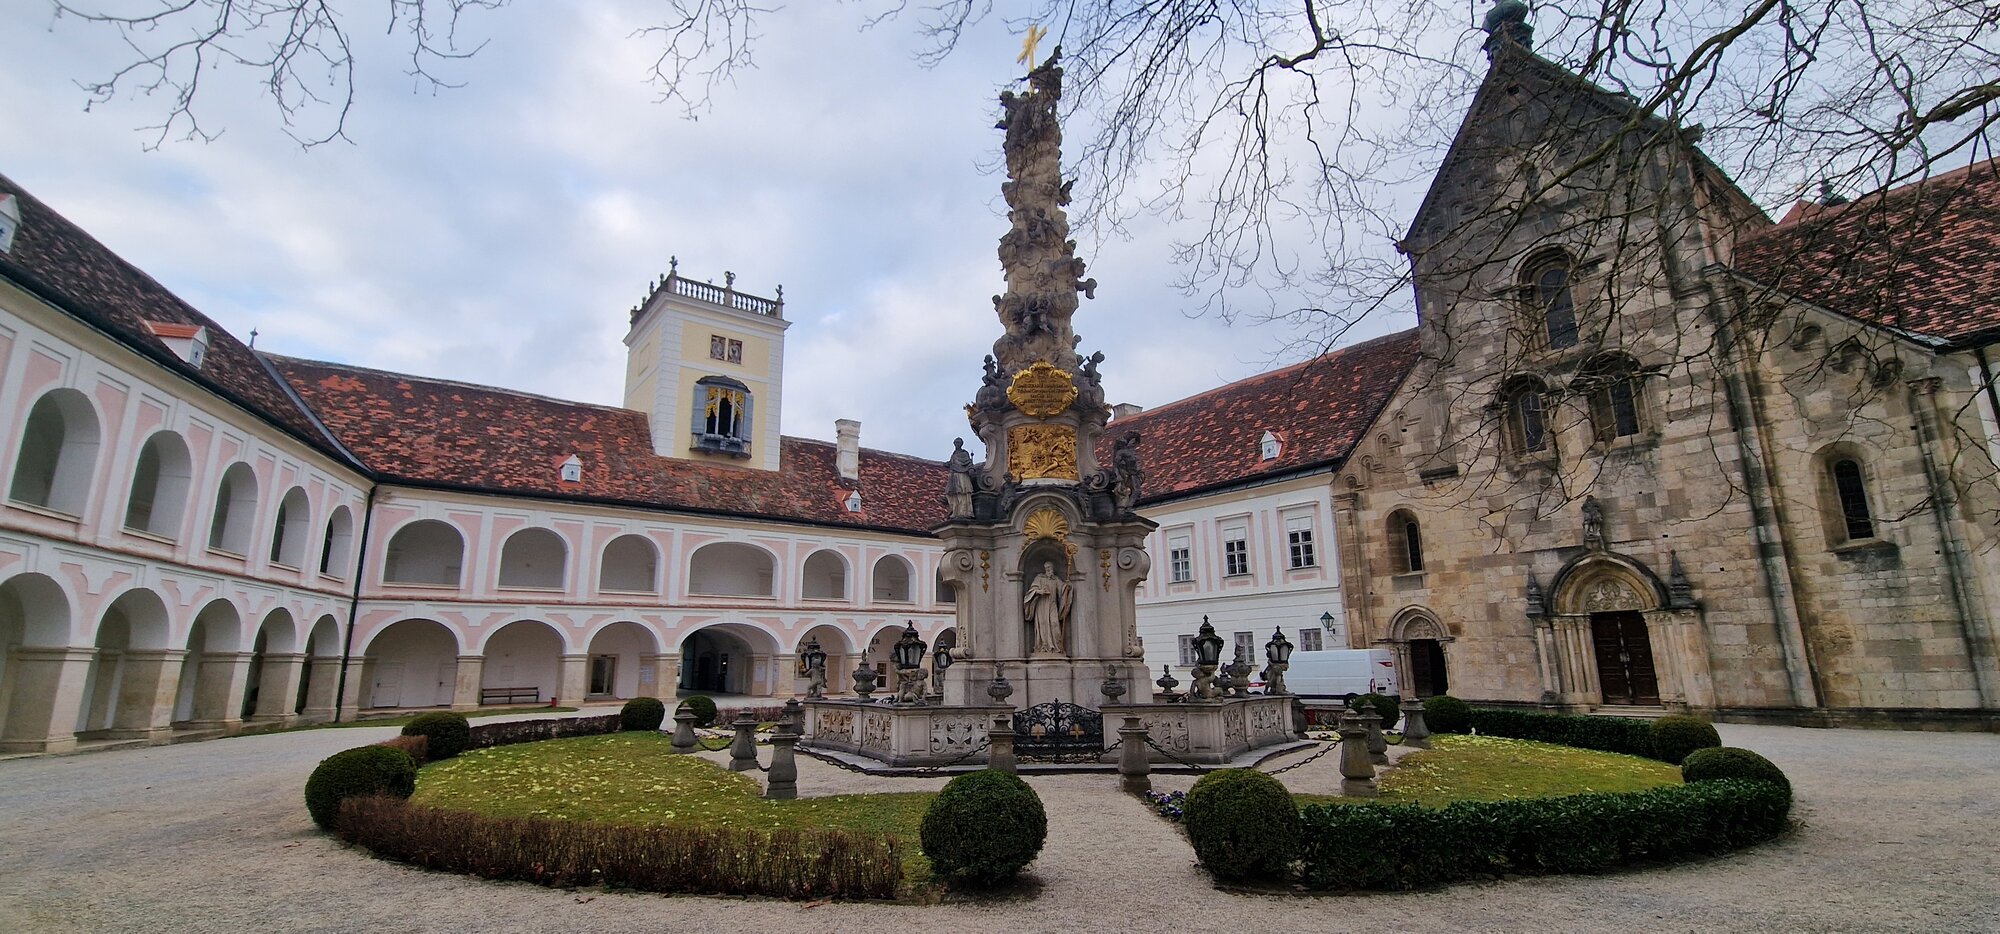 Innenhof im Stift Heiligenkreuz